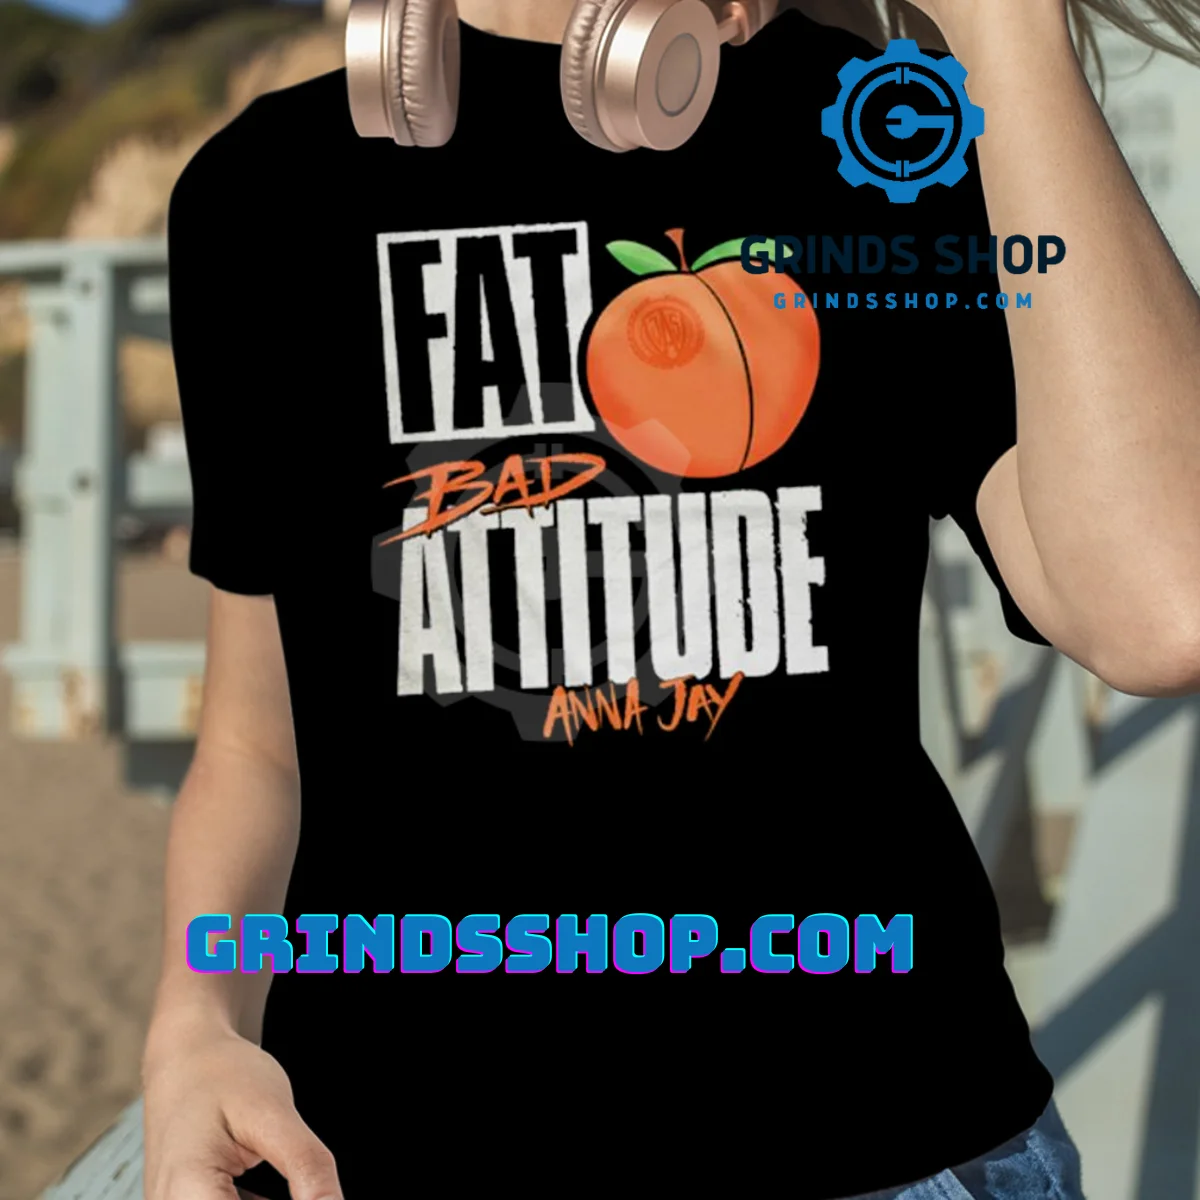 Fat Bad attitude Anna Jay shirt